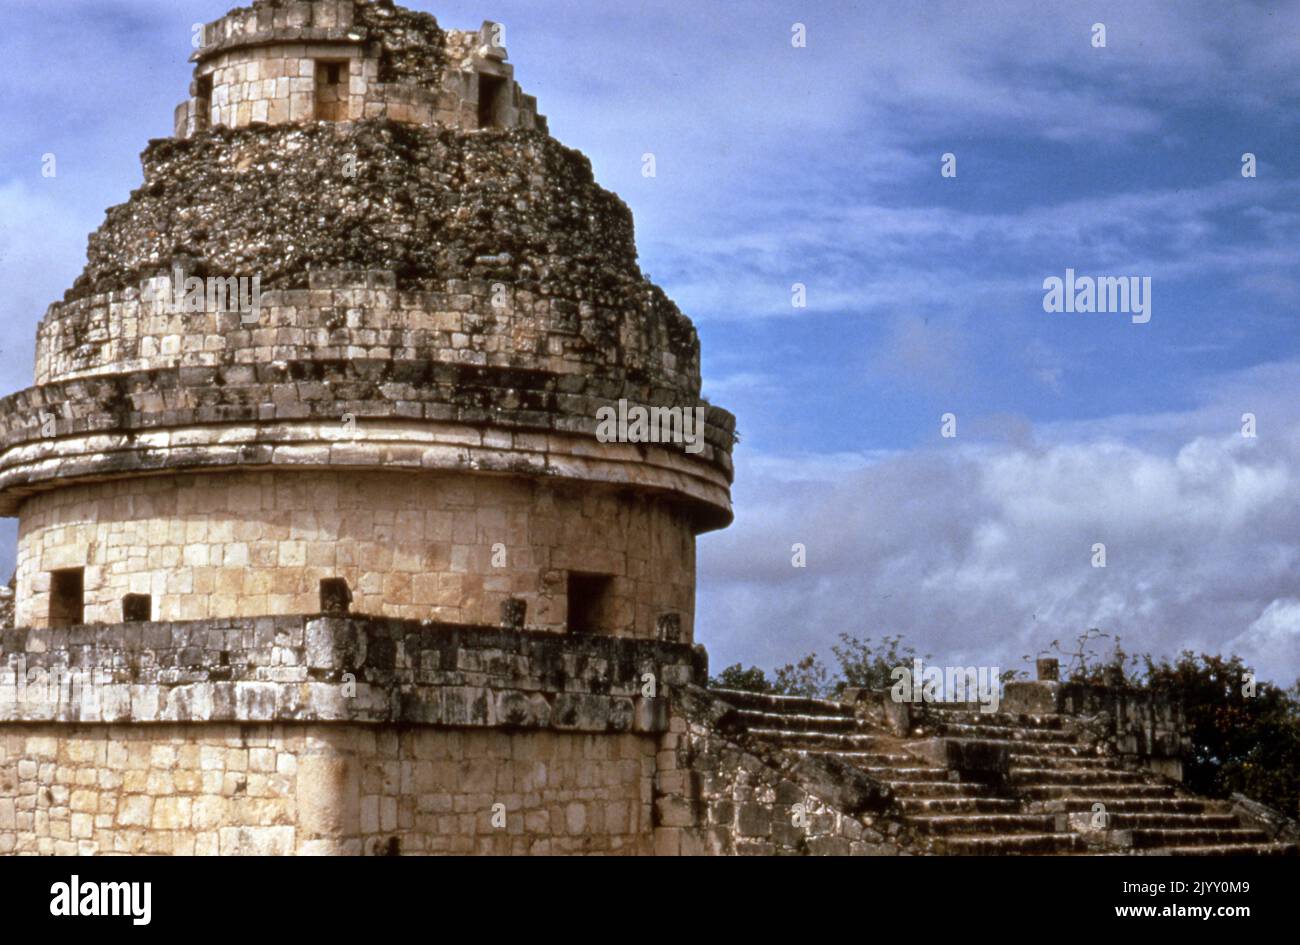 El Caracol, l'Observatoire, est une structure unique sur le site de la civilisation maya pré-colombienne de Chichen Itza. La structure est datée vers AD 906, la période classique tardive de la chronologie méso-américaine. Il est suggéré que l'El Caracol était un ancien bâtiment de l'observatoire Maya et a permis au peuple Maya d'observer les changements dans le ciel. Banque D'Images